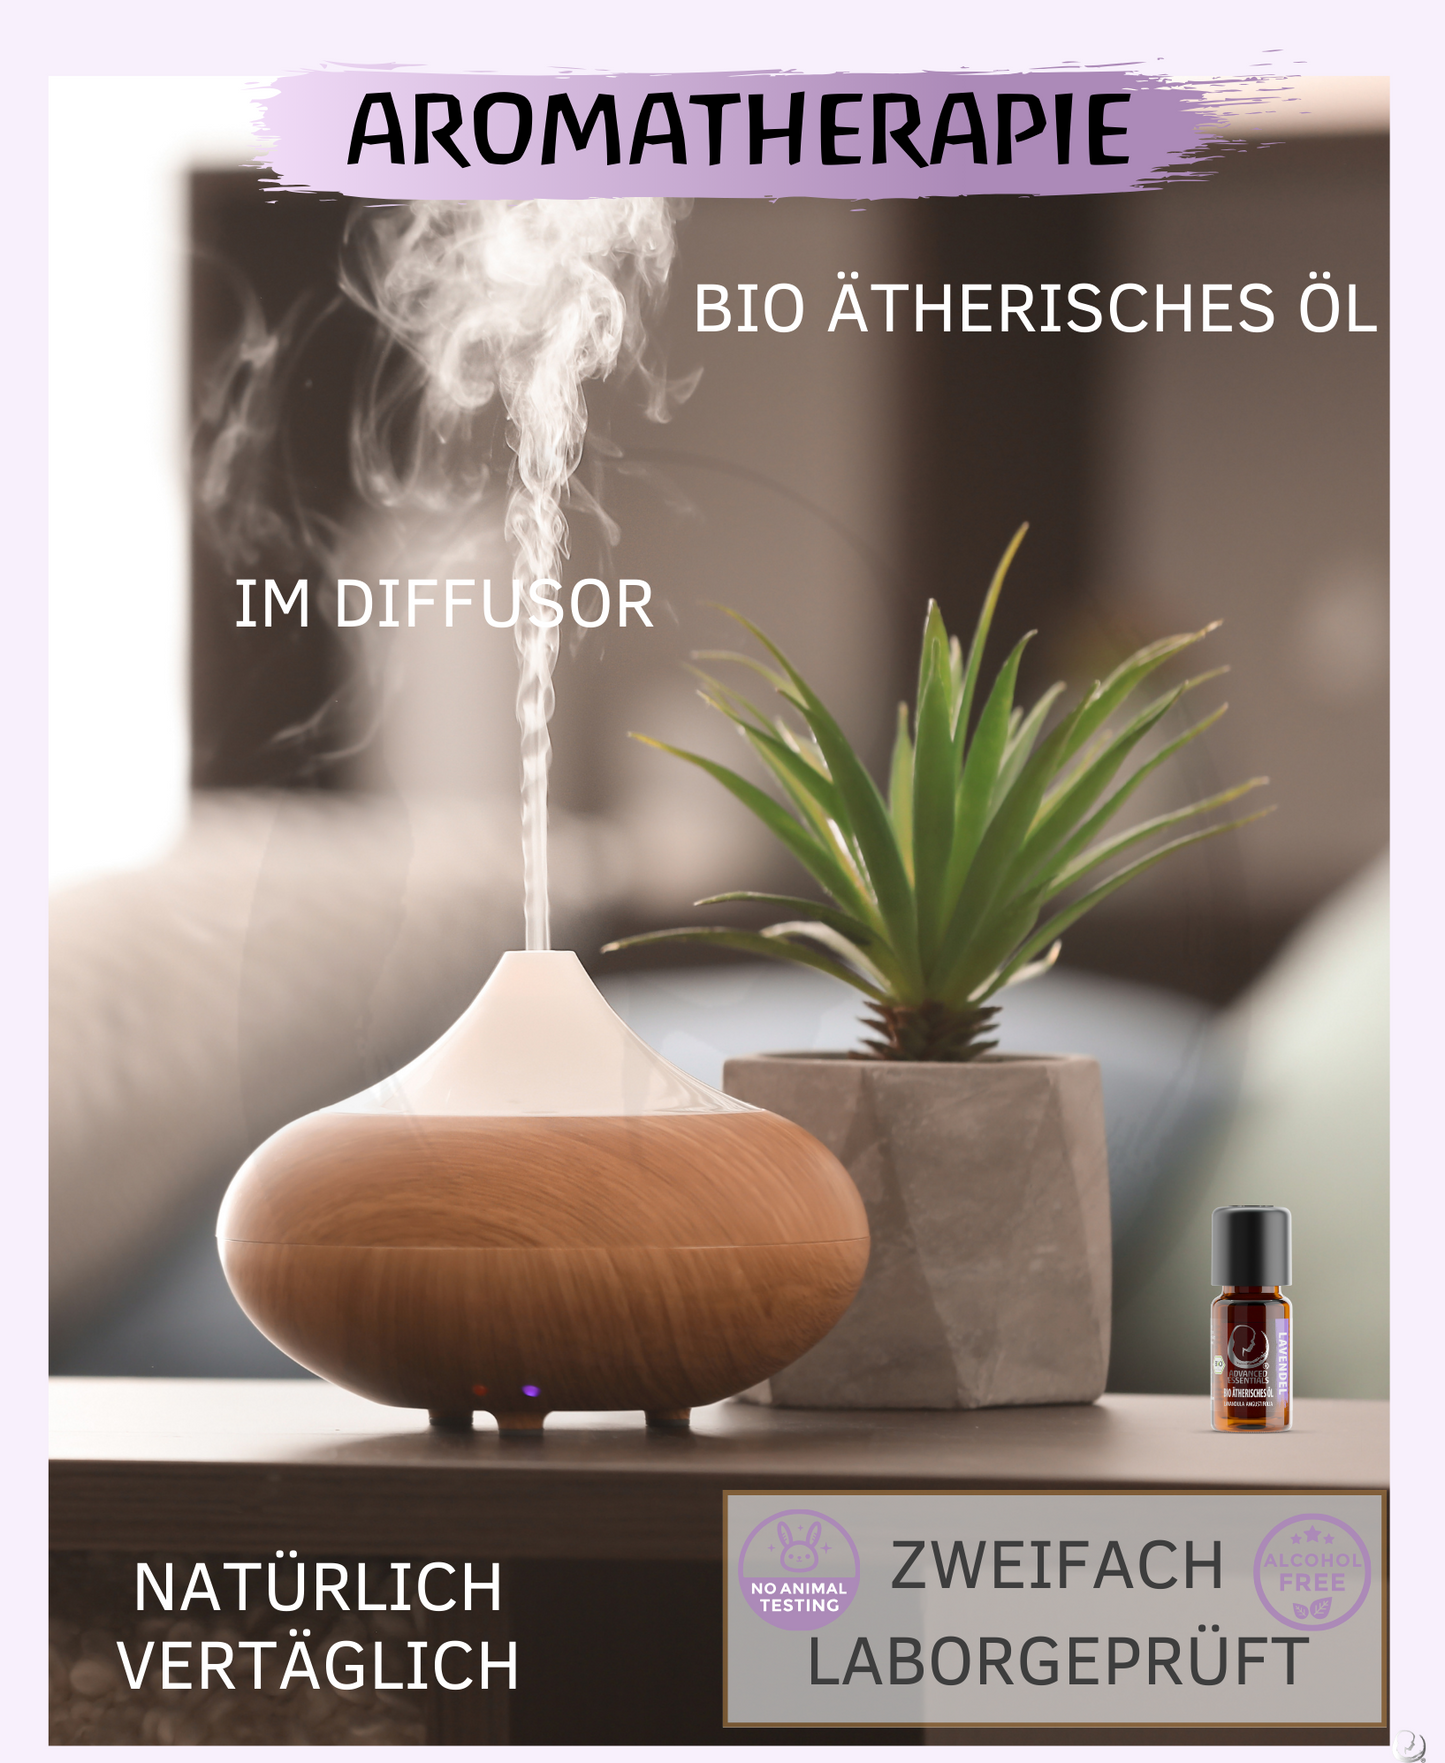 BIO Lavendelöl ätherisches Öl (Lavandula angustifolia) kontrolliert biologischer Anbau Lavendelöl bio aus Bulgarien (Lavendel, 10ml)